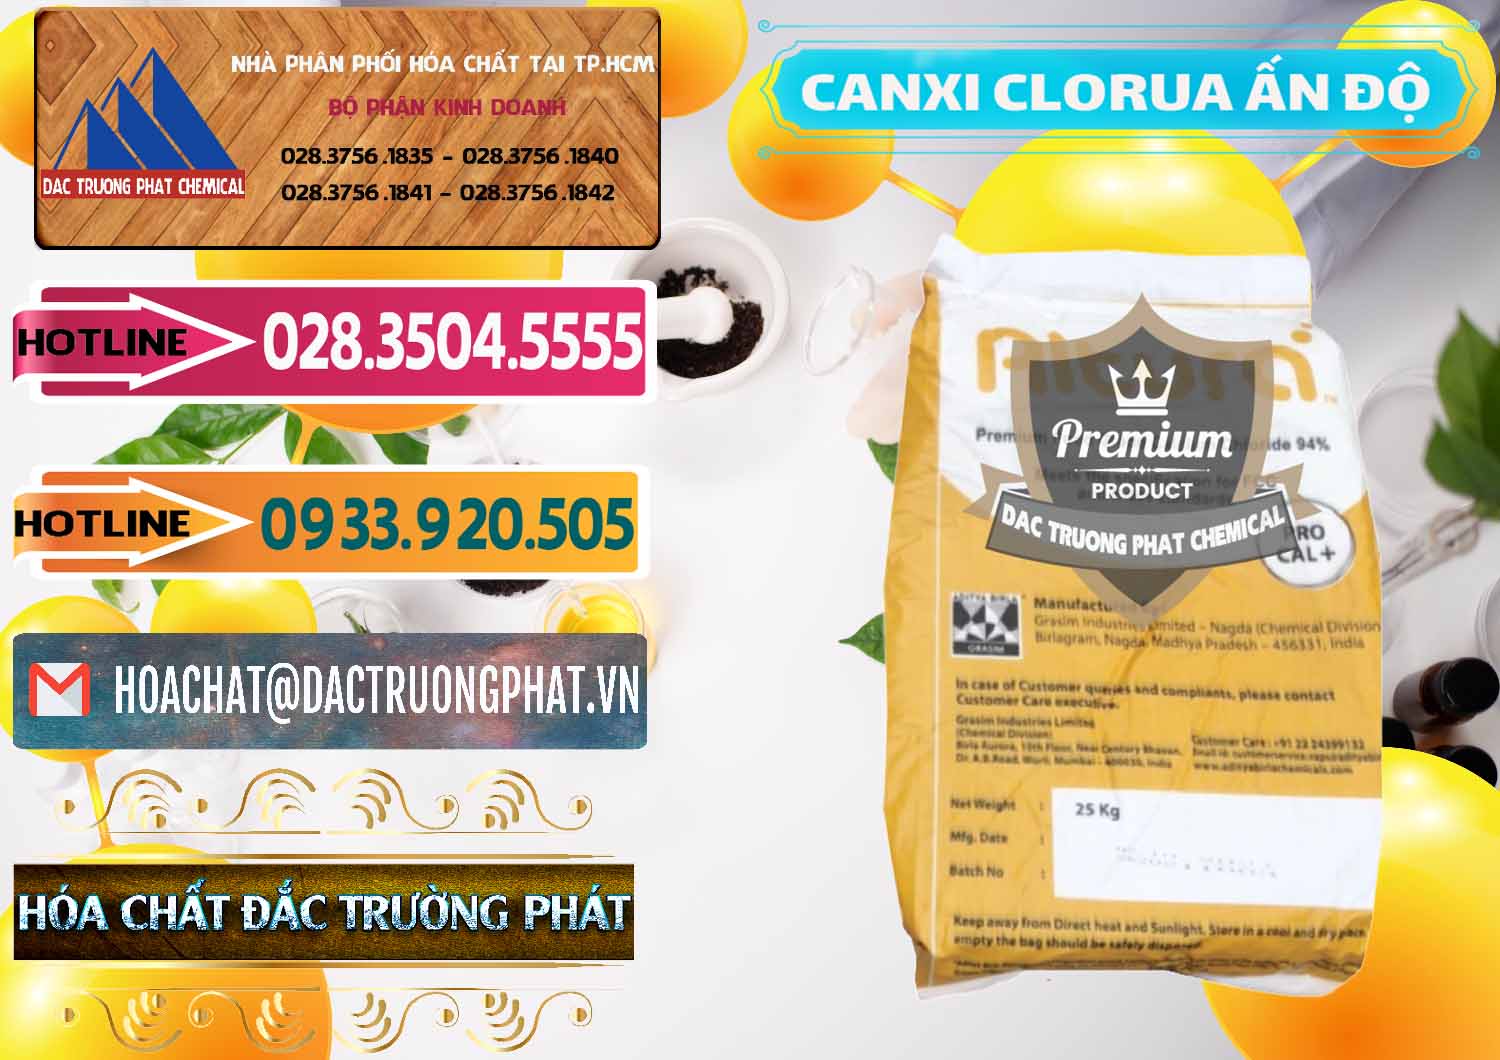 Cty chuyên phân phối & bán CaCl2 – Canxi Clorua Food Grade Altura Aditya Birla Grasim Ấn Độ India - 0436 - Công ty phân phối & cung cấp hóa chất tại TP.HCM - dactruongphat.vn